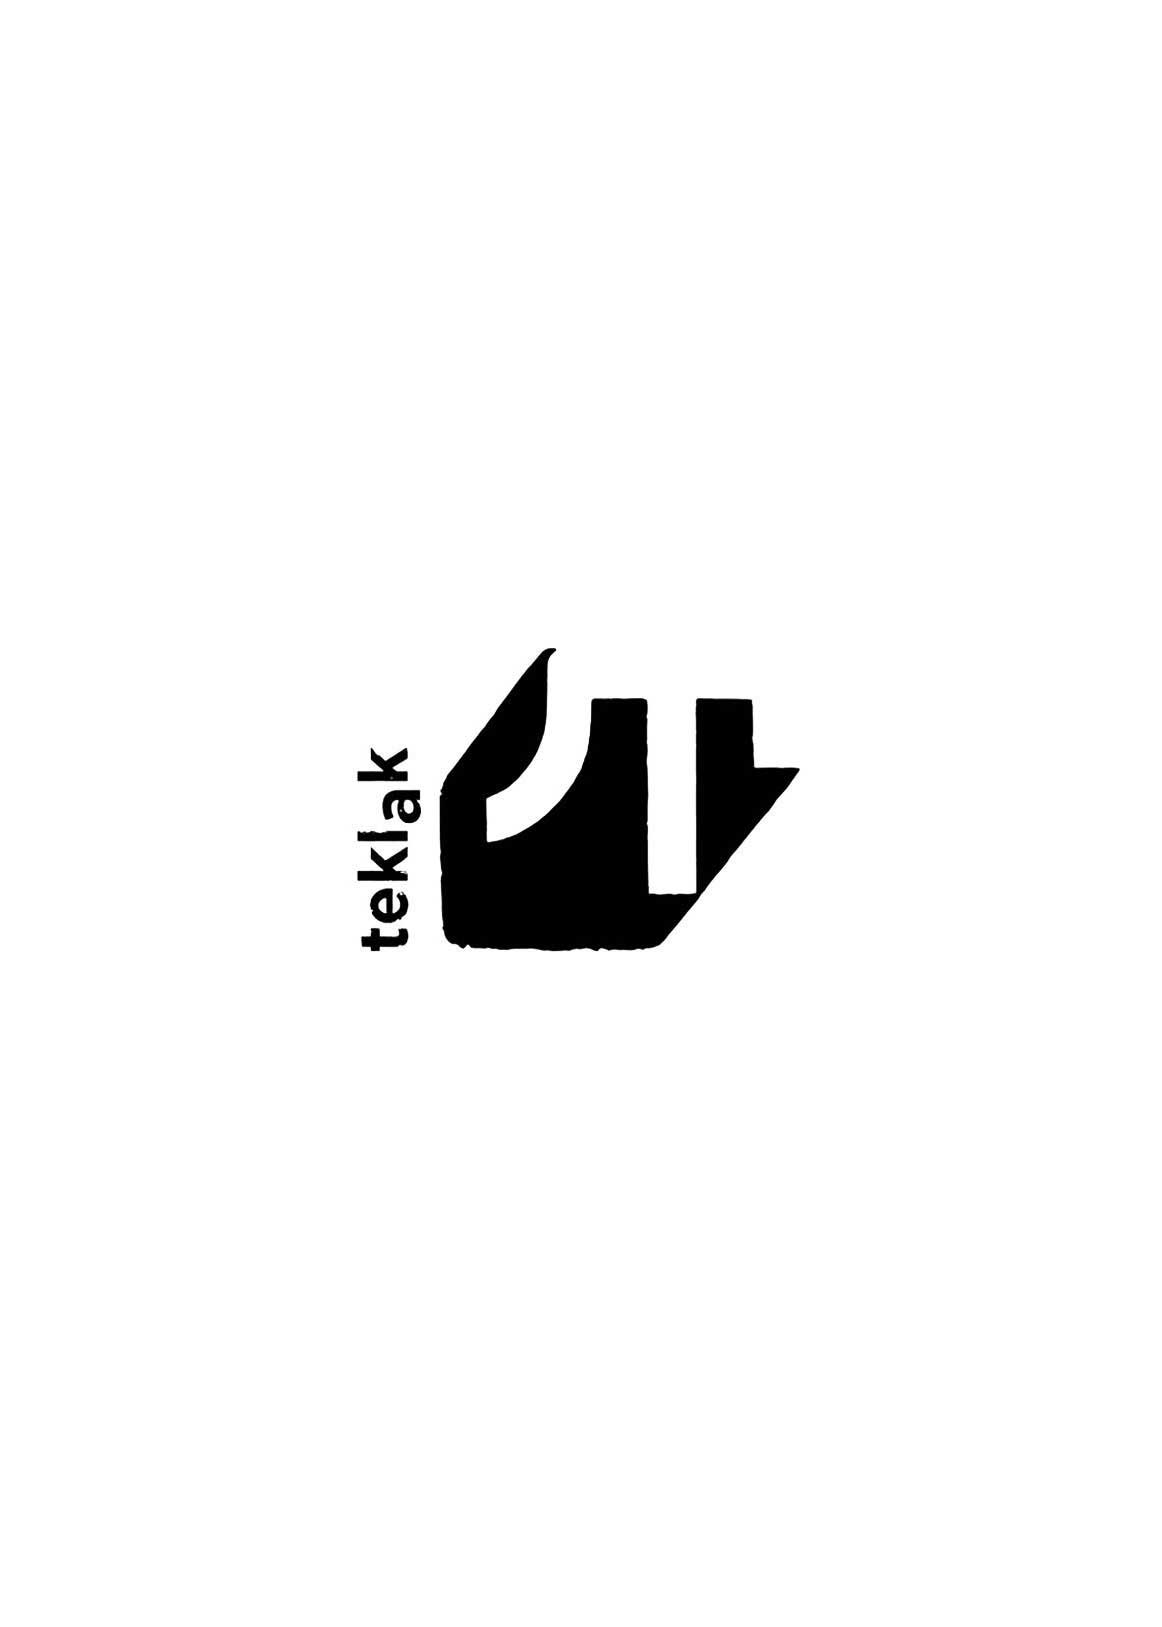 Logotipo de Teklak sobre fondo blanco.